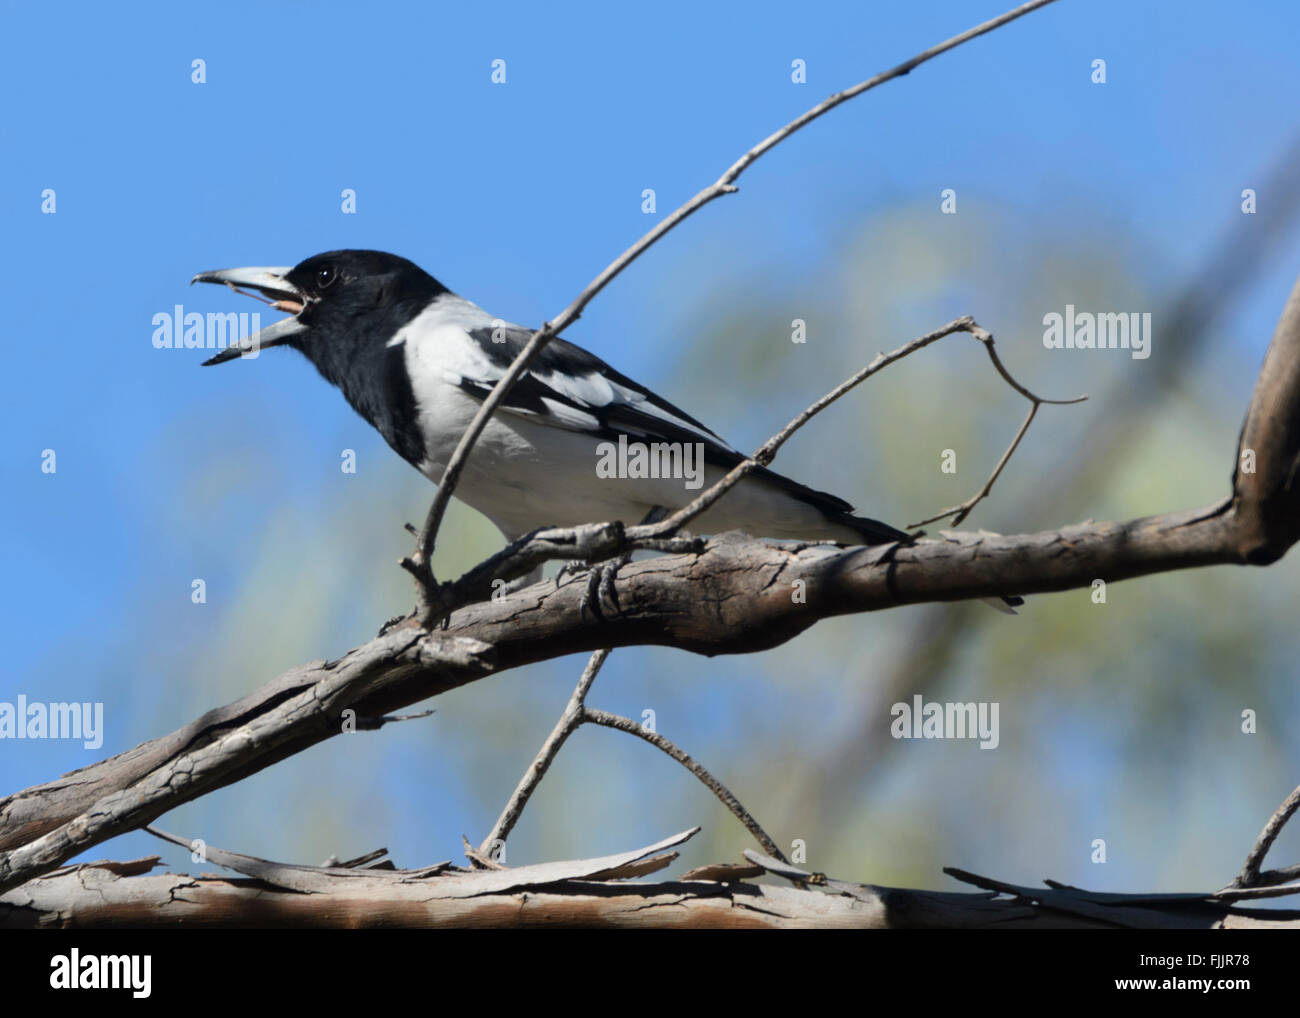 Pied Butcherbird (Cracticus nigrogularis) swallowing Prey, Queensland, Australia Stock Photo